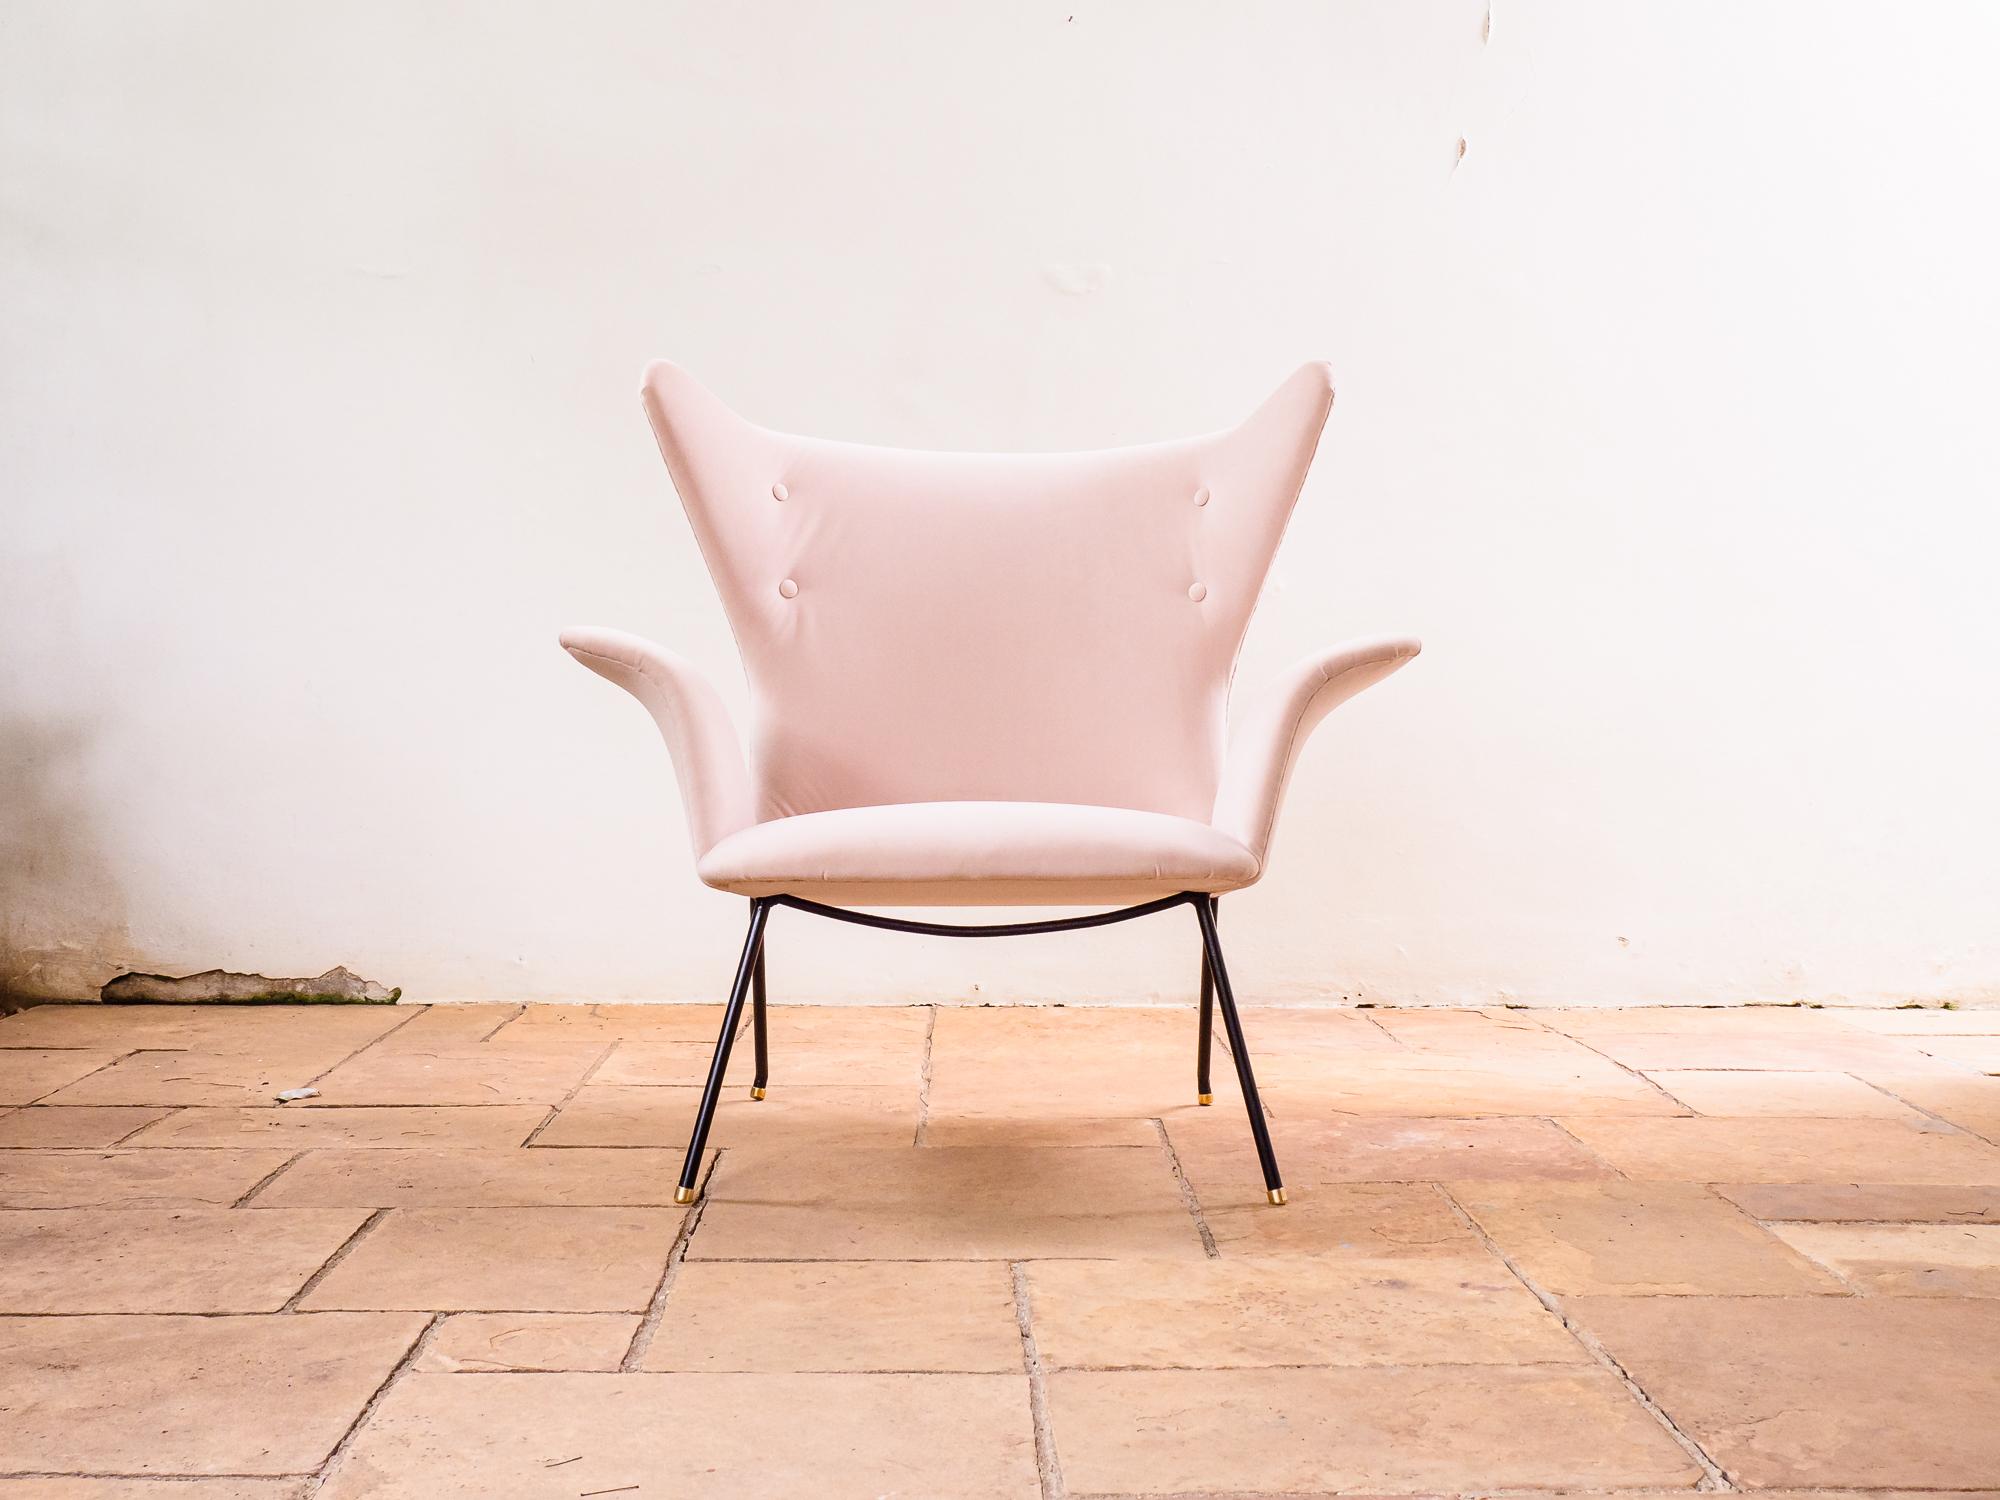 Rare et magnifique chaise longue, conçue par Carlo Hauner pour Móveis Artesanal au début des années 1950. 

Partageant certaines particularités avec d'autres prototypes de ses premiers jours au Brésil, cette chaise est probablement un exemplaire